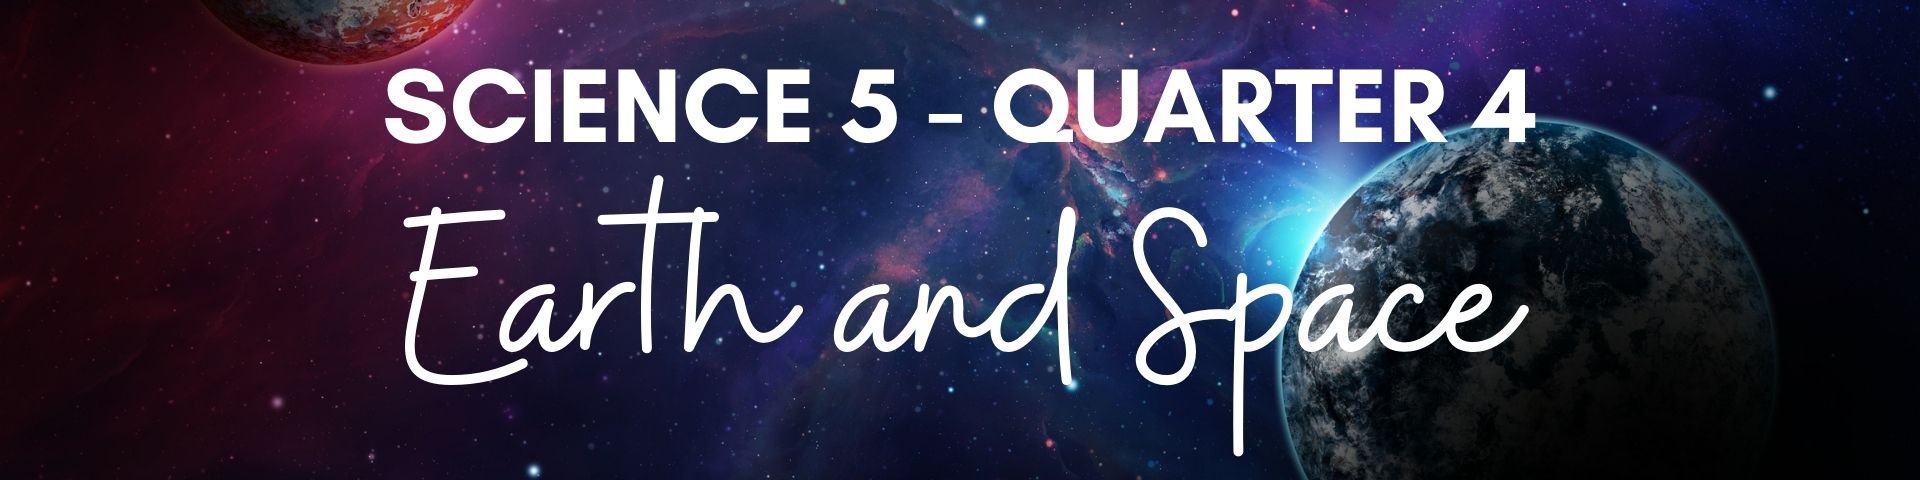 G5 - Science Quarter 4 copy 16